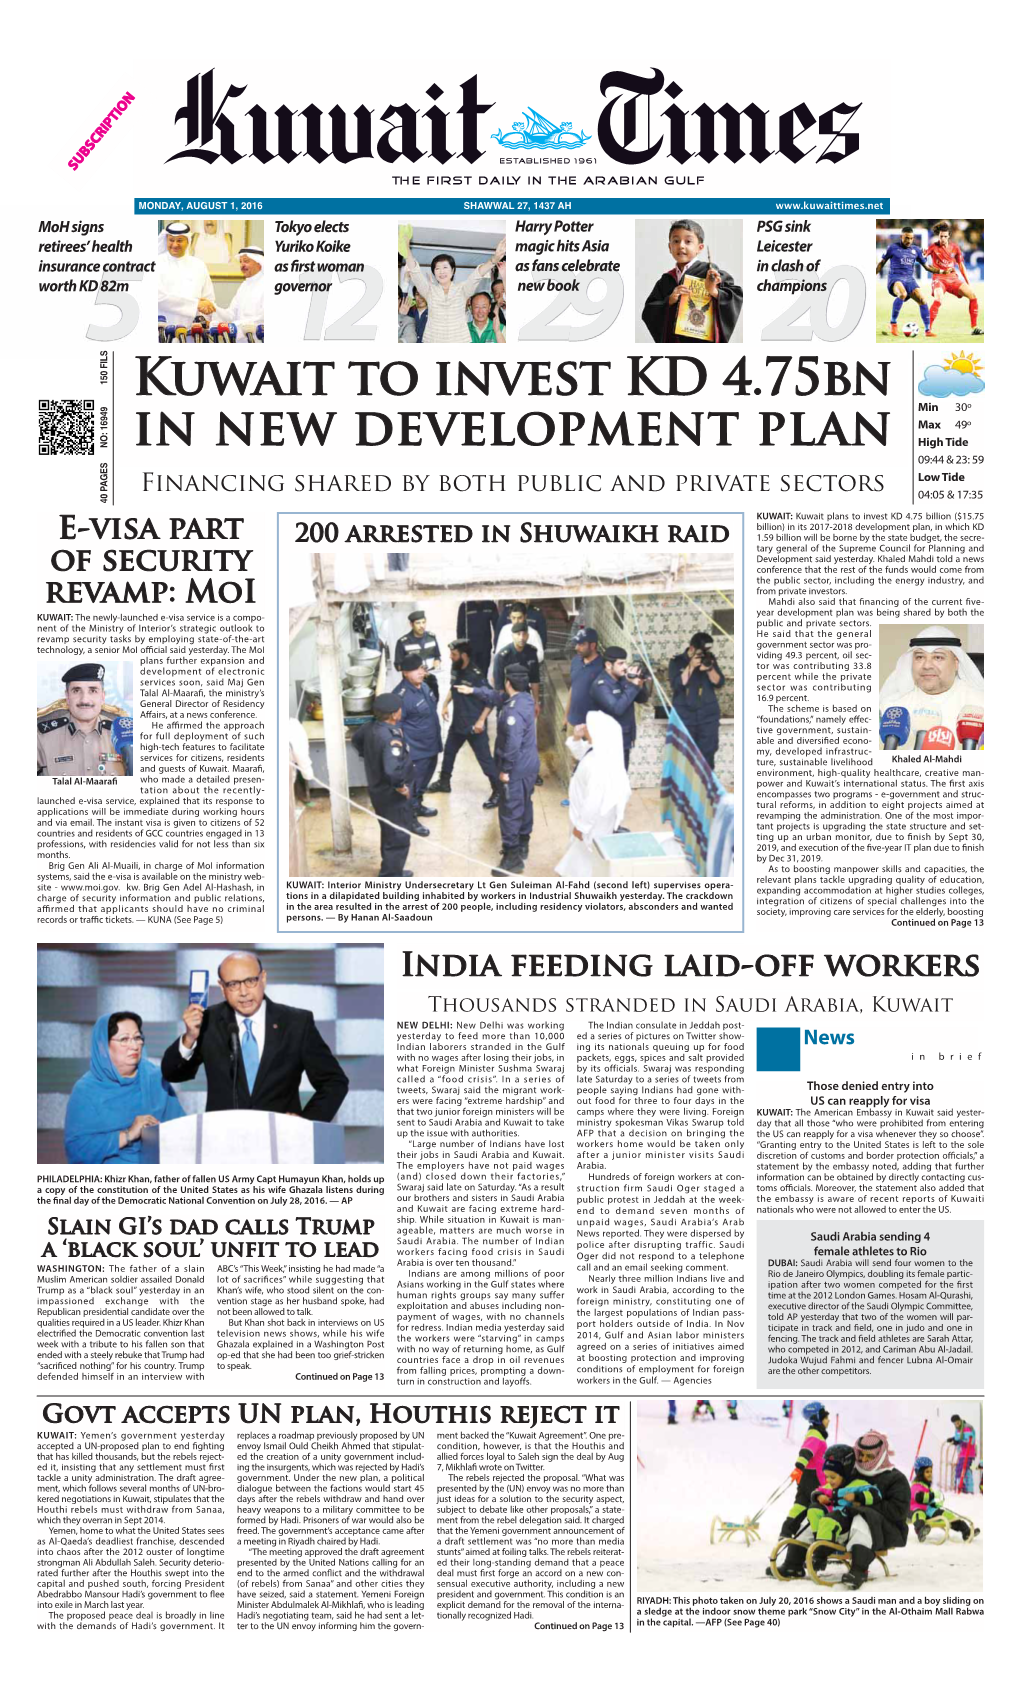 Kuwait to Invest KD 4.75Bn in New Development Plan